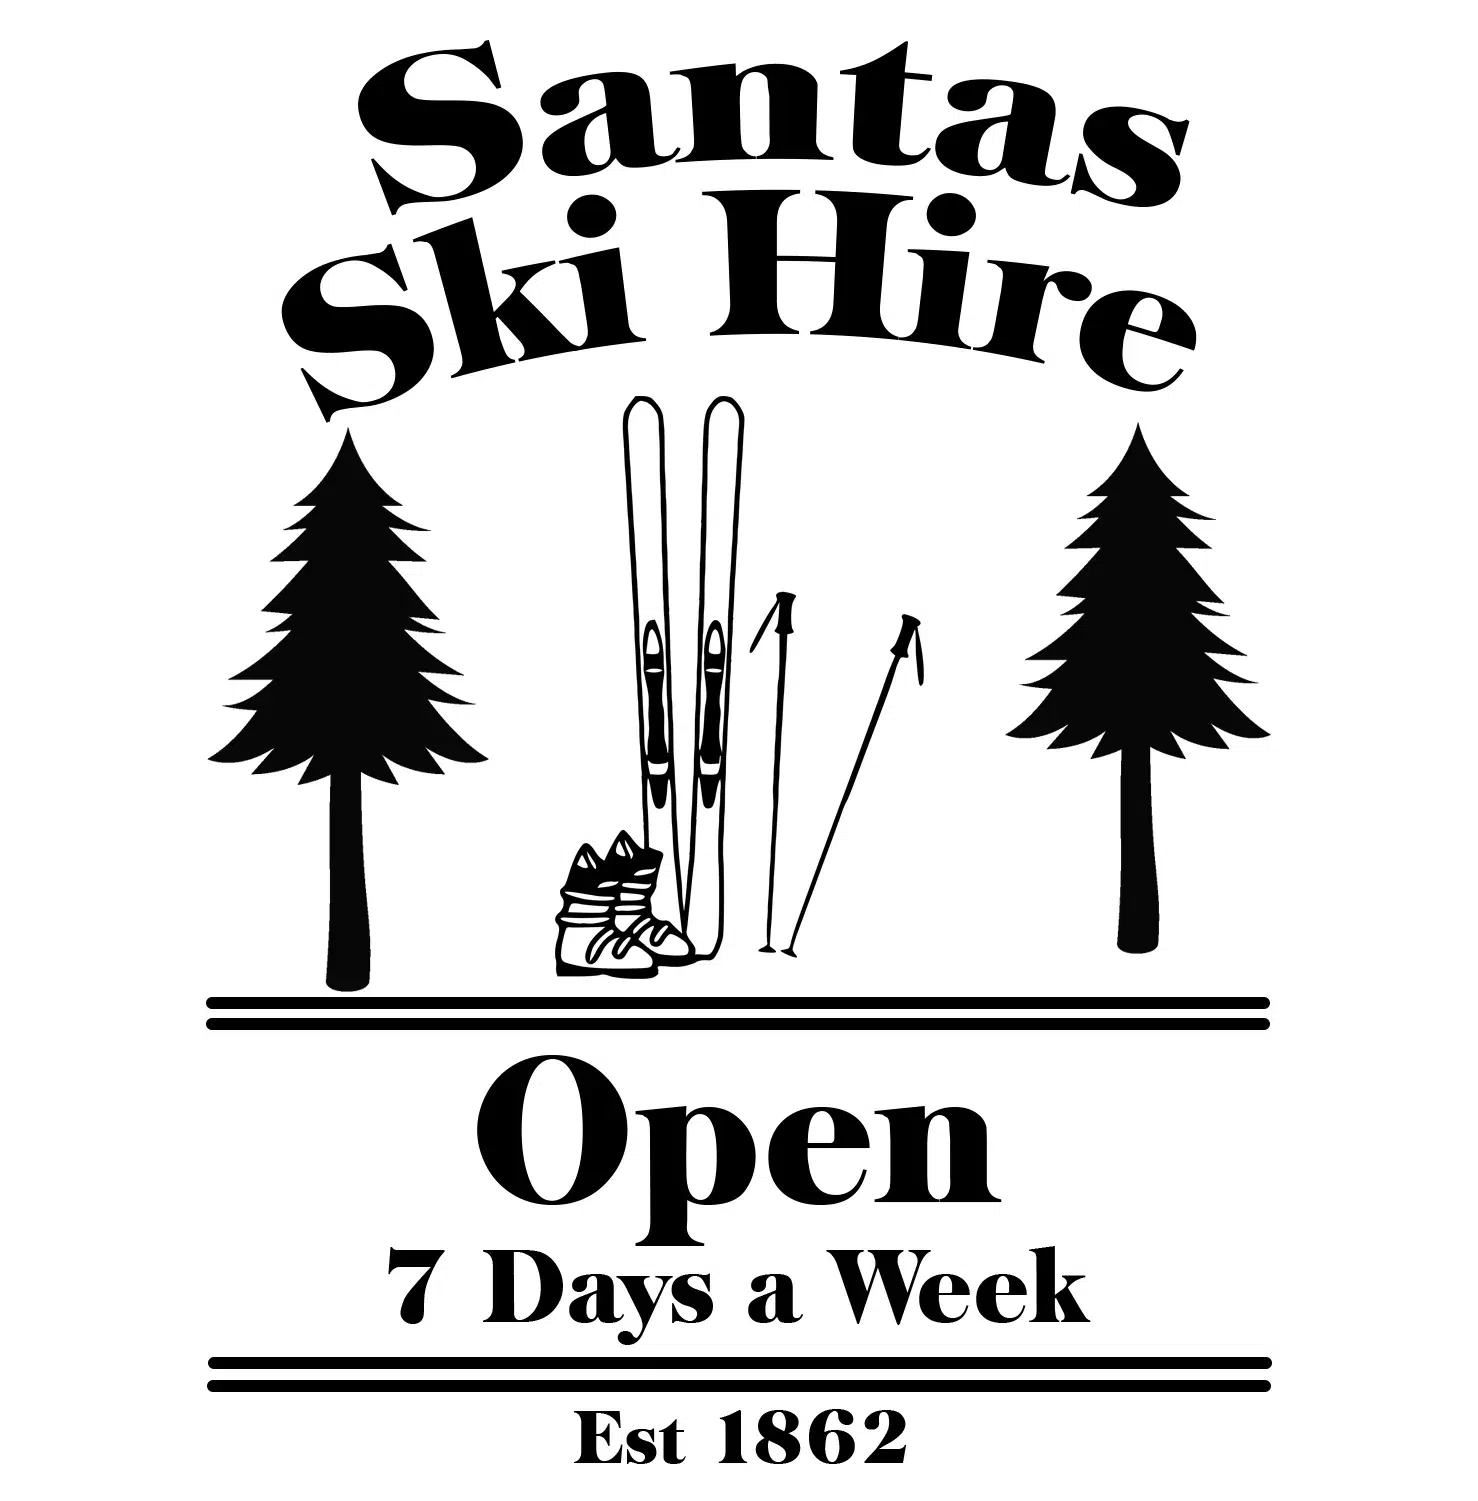 Santa Ski Shop